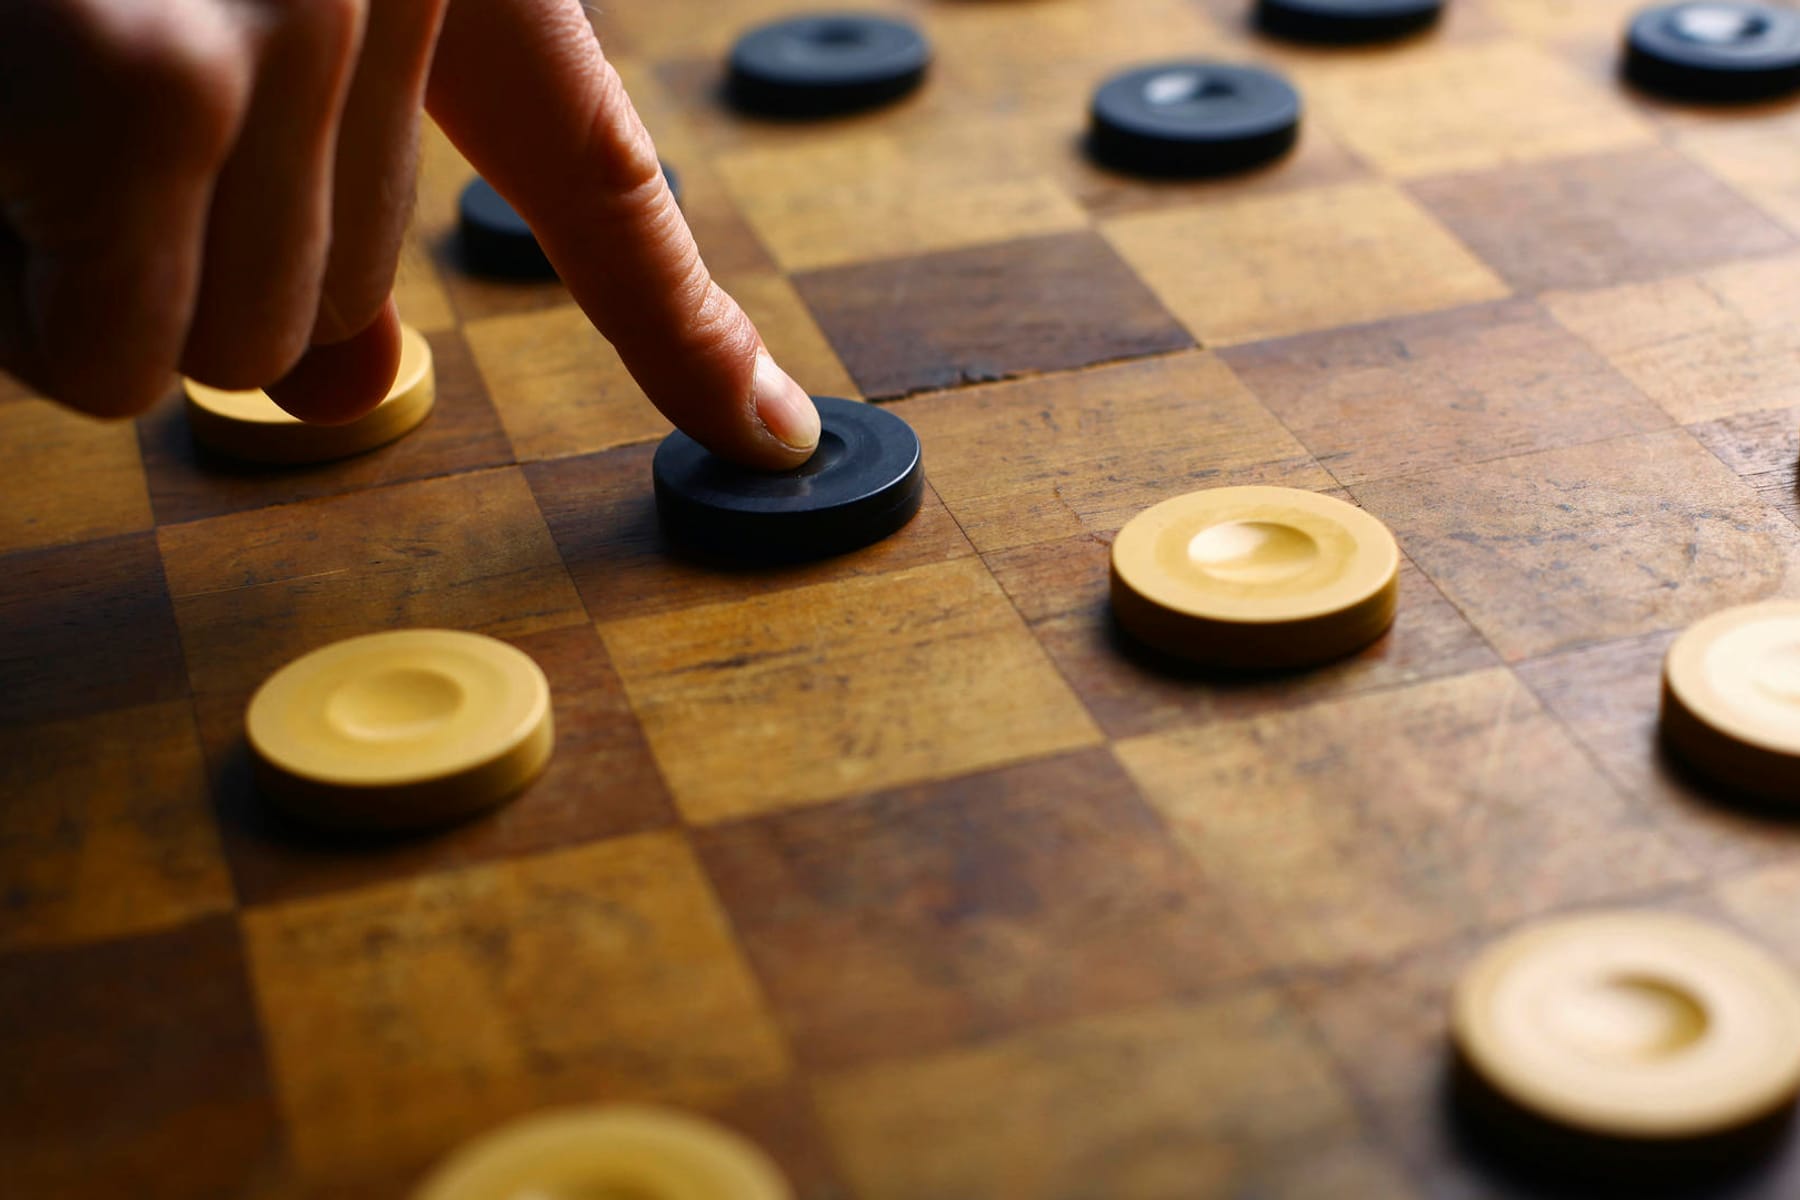 Schach online spielen: 7 bekannte Anbieter im Überblick